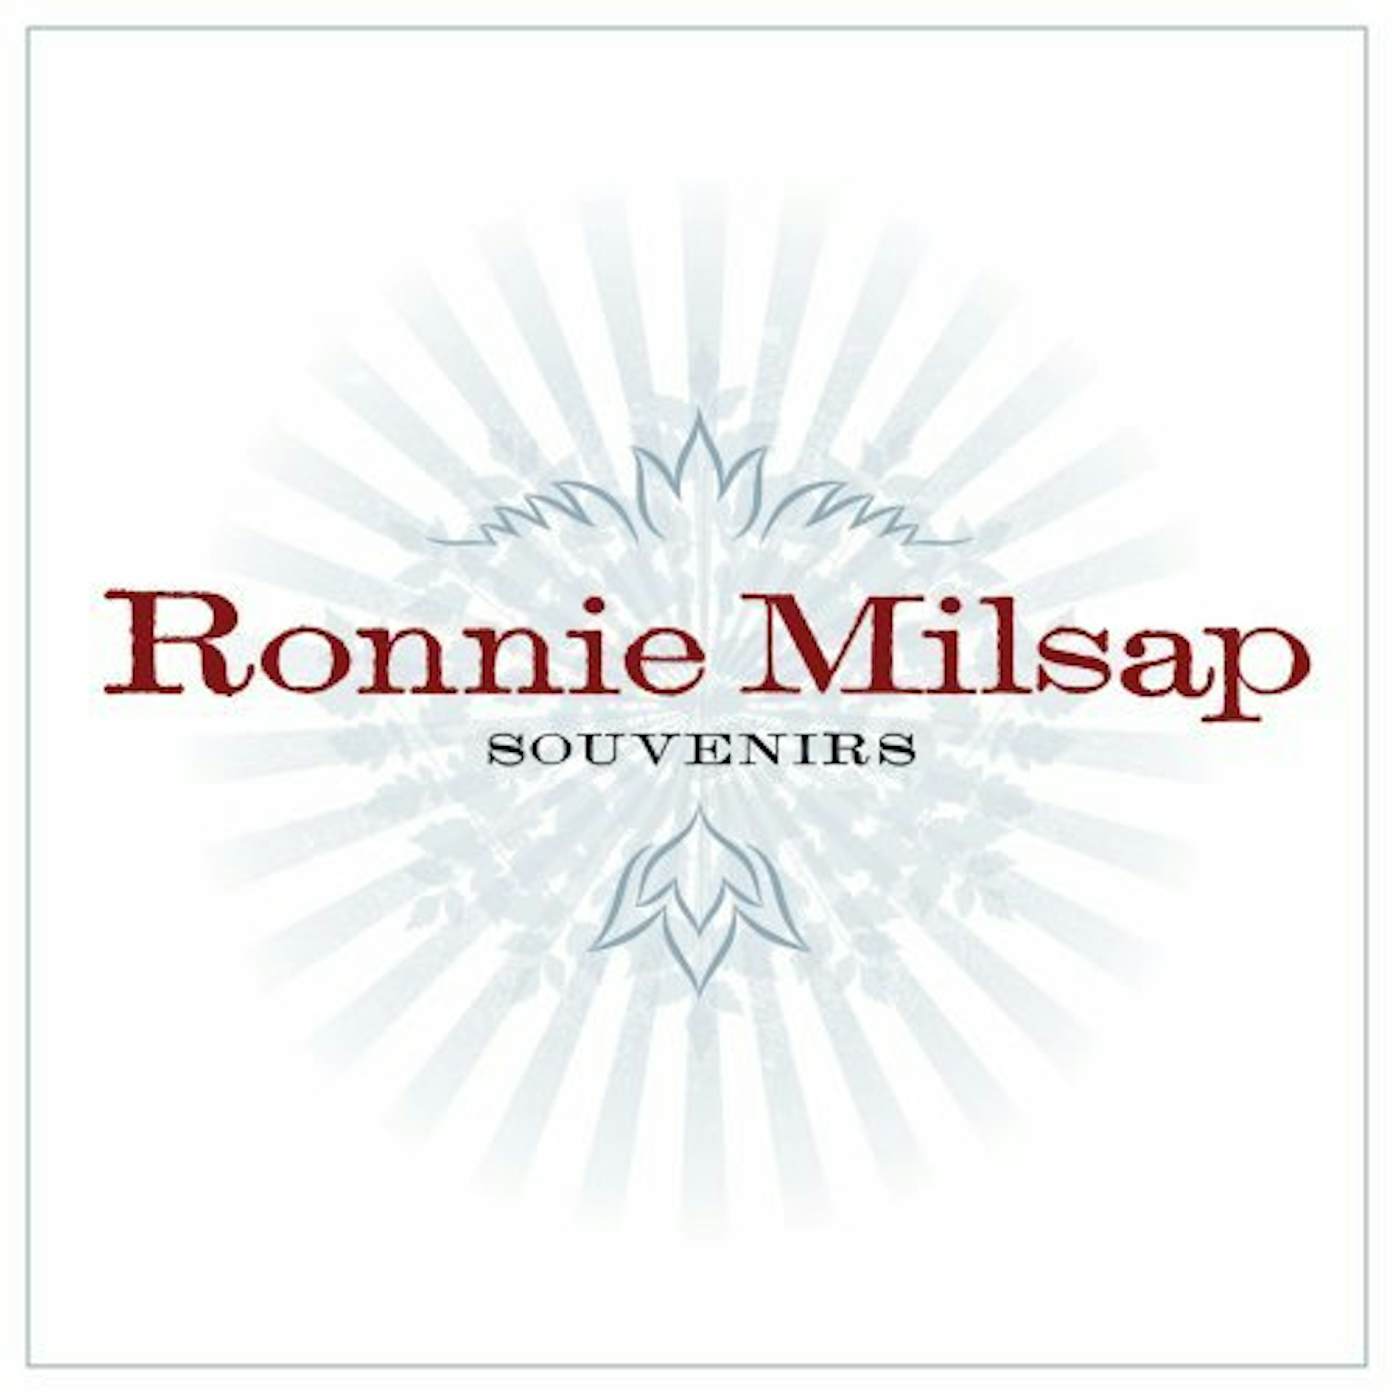 Ronnie Milsap SOUVENIRS CD